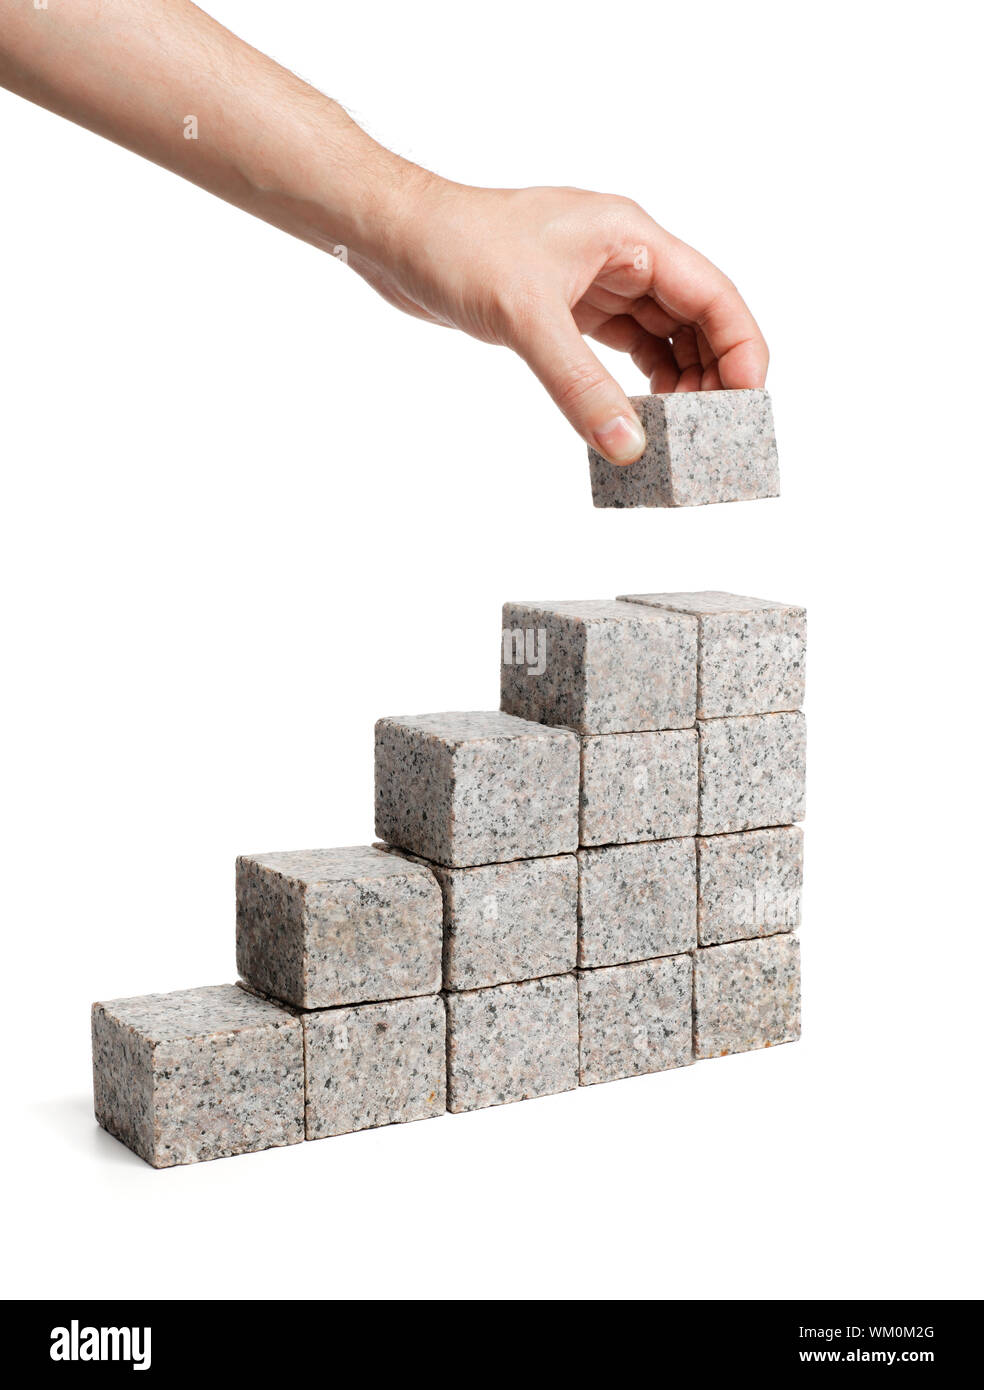 Man stacking blocks made of granite rock. Stock Photo